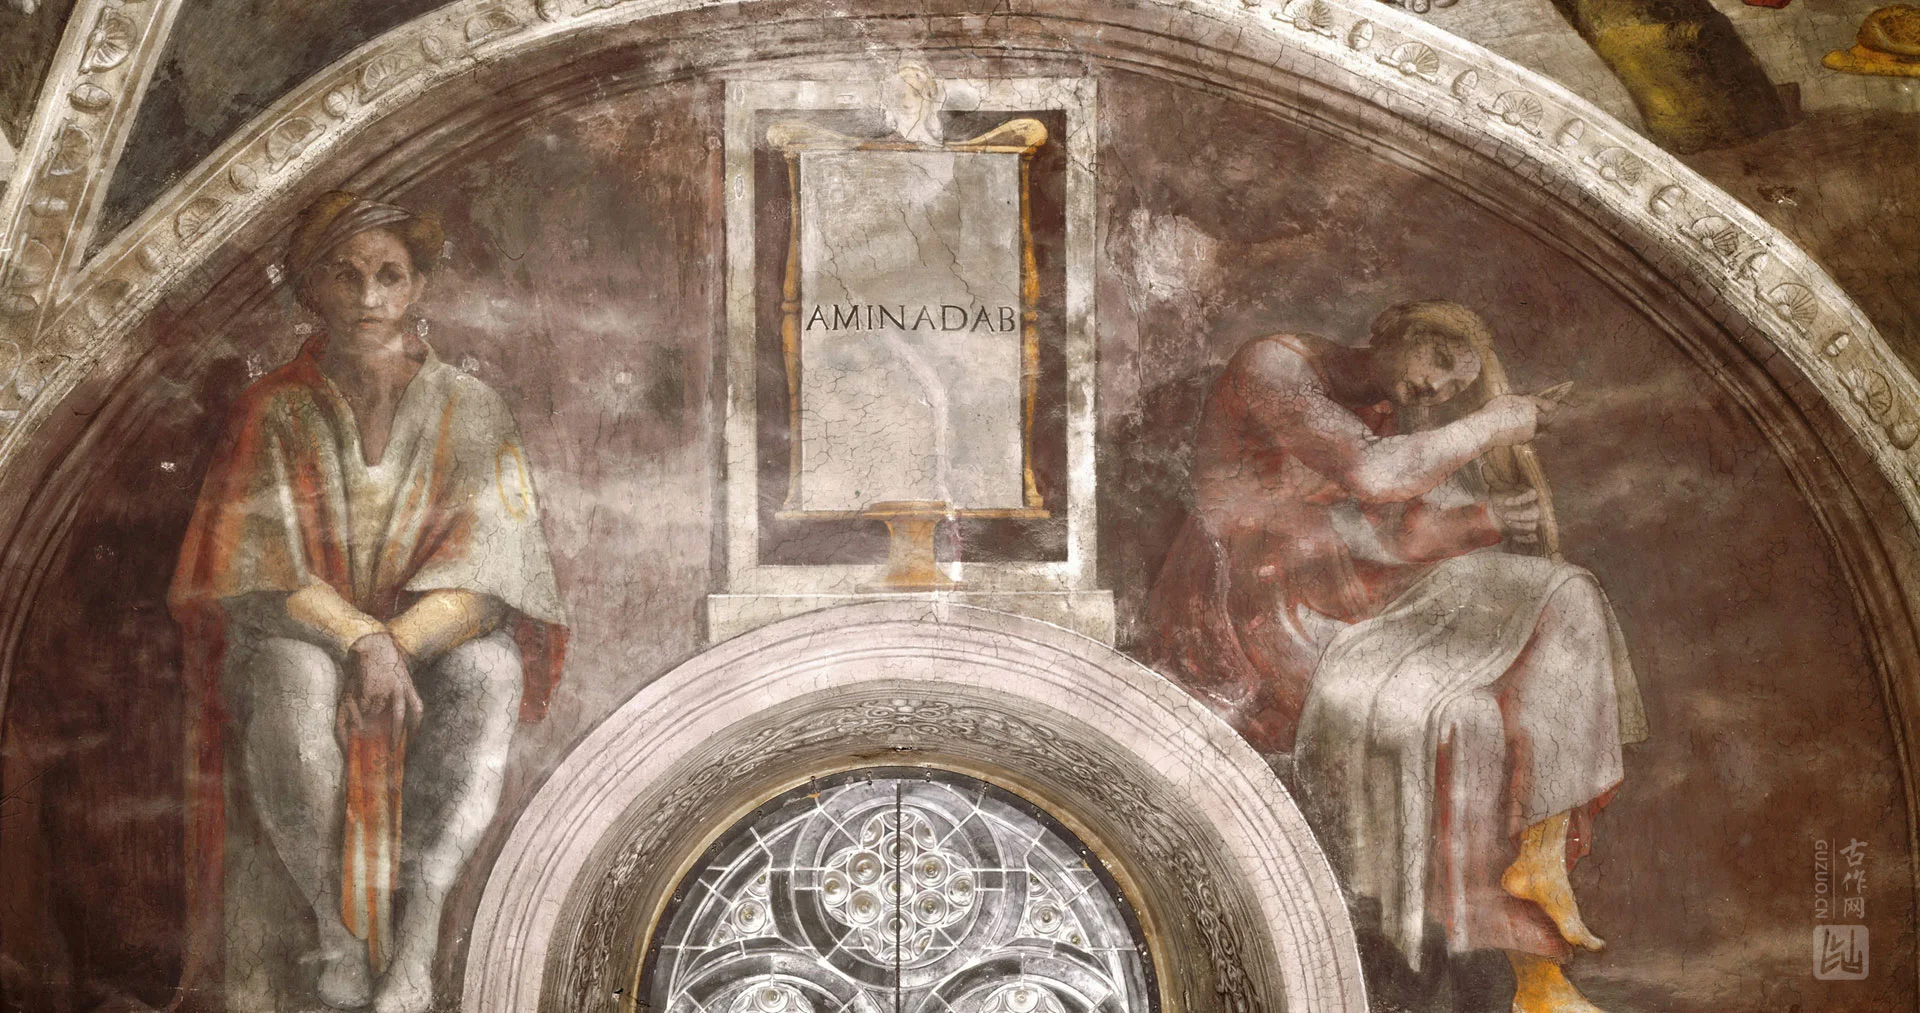 米开朗基罗西斯廷教堂天顶壁画 基督的祖先：阿米拿达